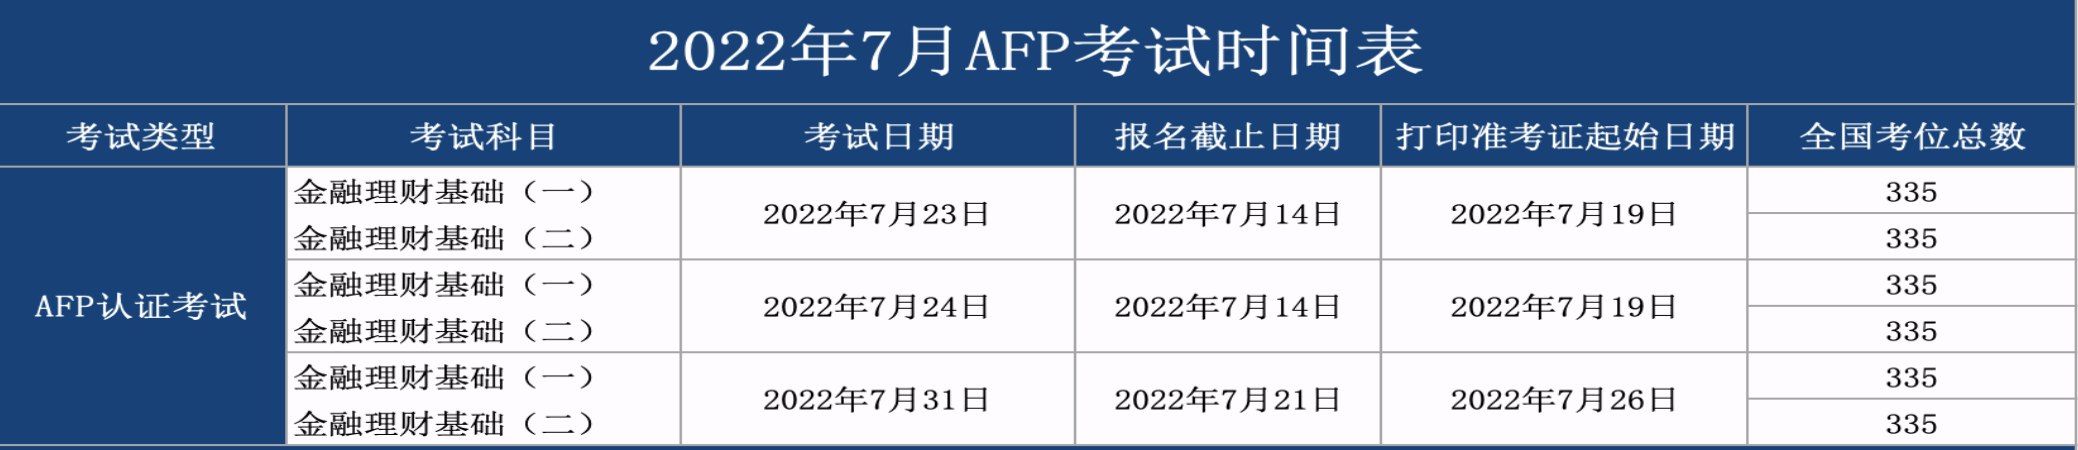 2022年7月AFP报名时间